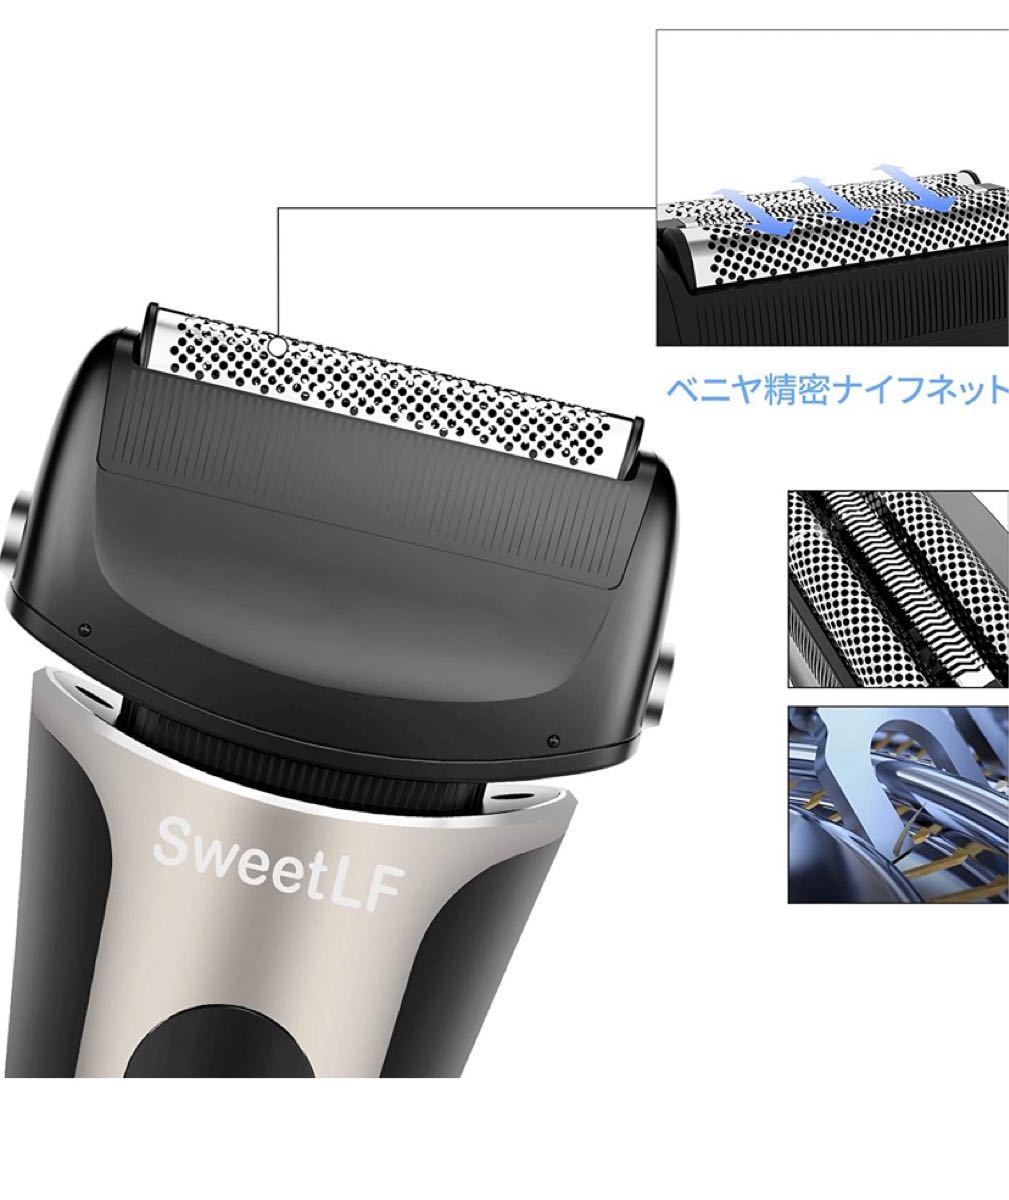 電気シェーバー メンズ ひげそり 往復式 3枚刃 USB充電式 お風呂剃り可 LED電池残量表示トリマー付き